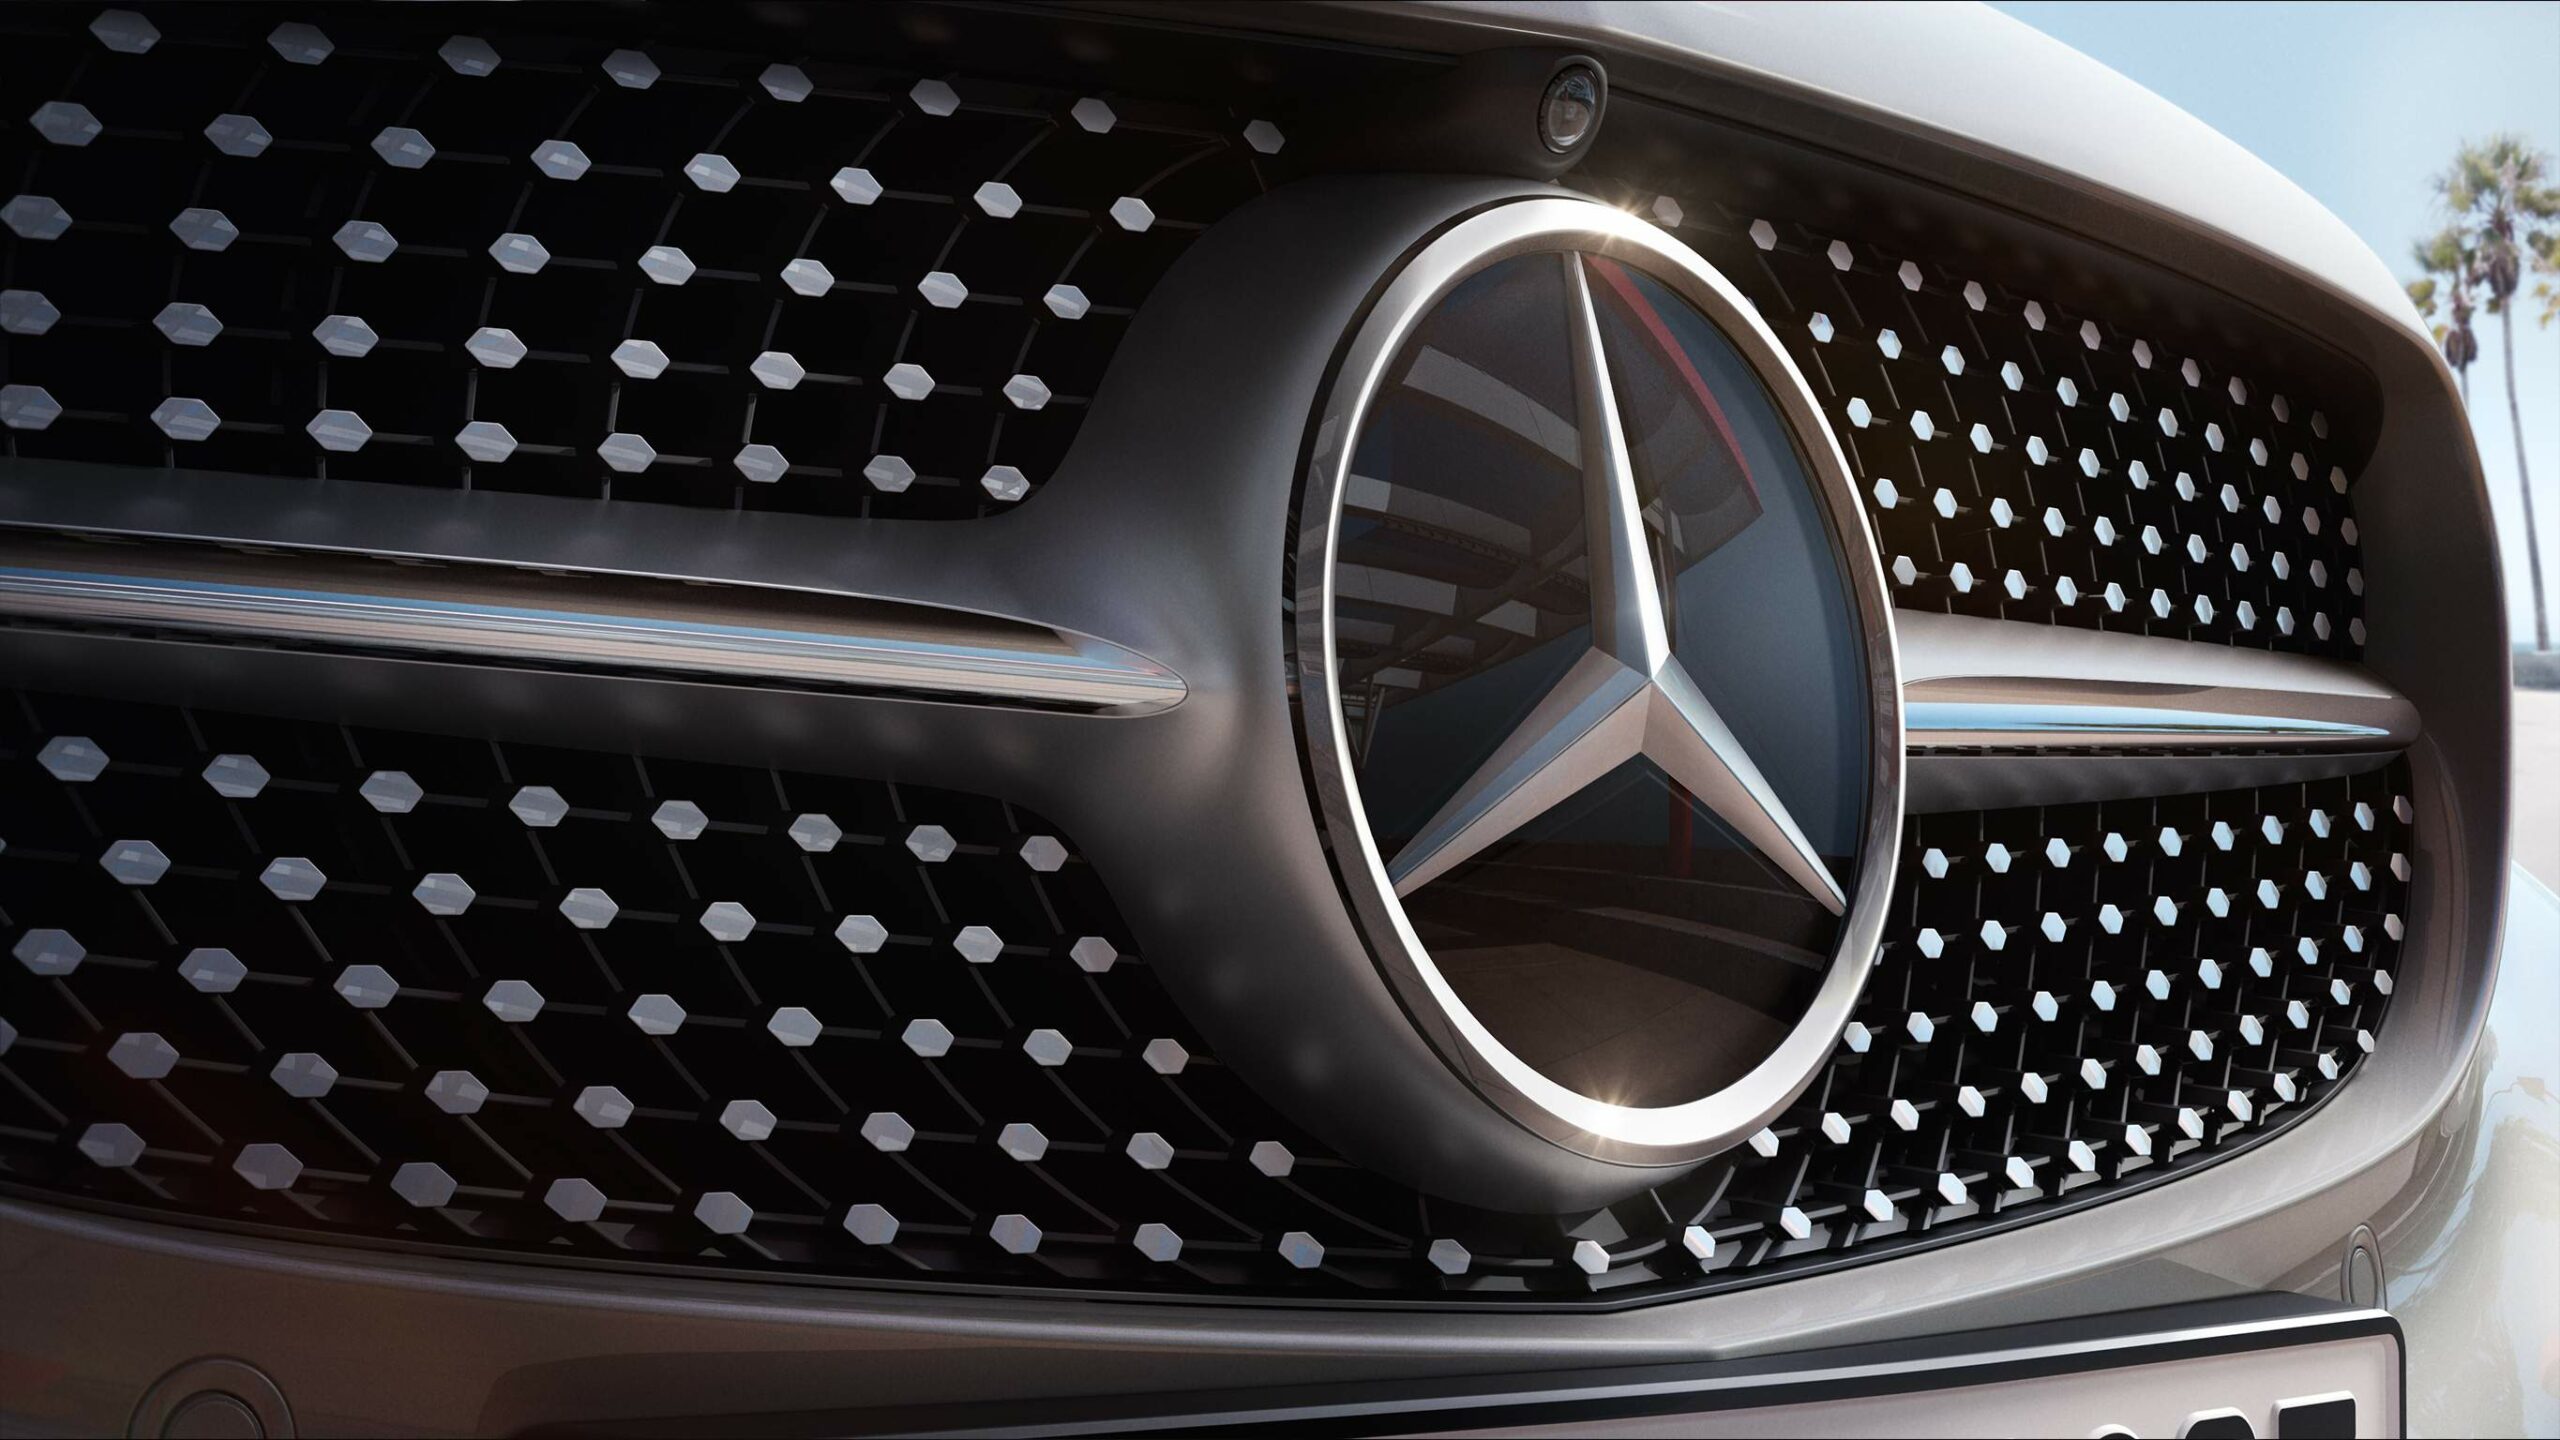 Parrilla y estrella de Mercedes-Benz en la descapotable Clase C Cabriolet